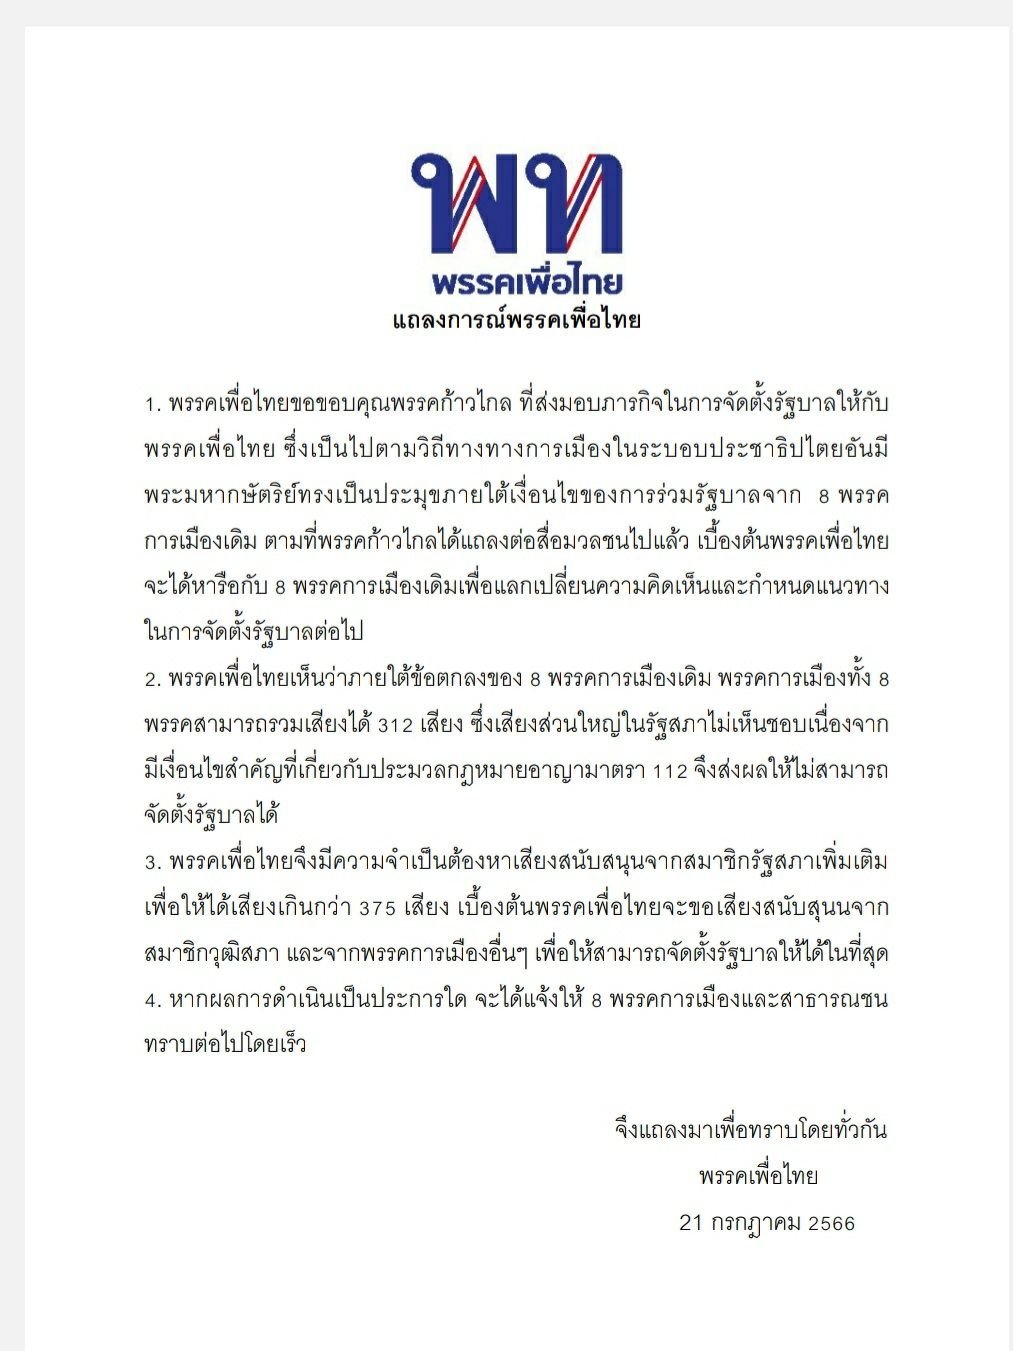 “สว. สมชาย” ยินดีเพื่อไทยเป็นแก่นนำจัดตั้งรัฐบาล กางเงื่อนไข 10 ข้อ ในการเลือกนายกฯ